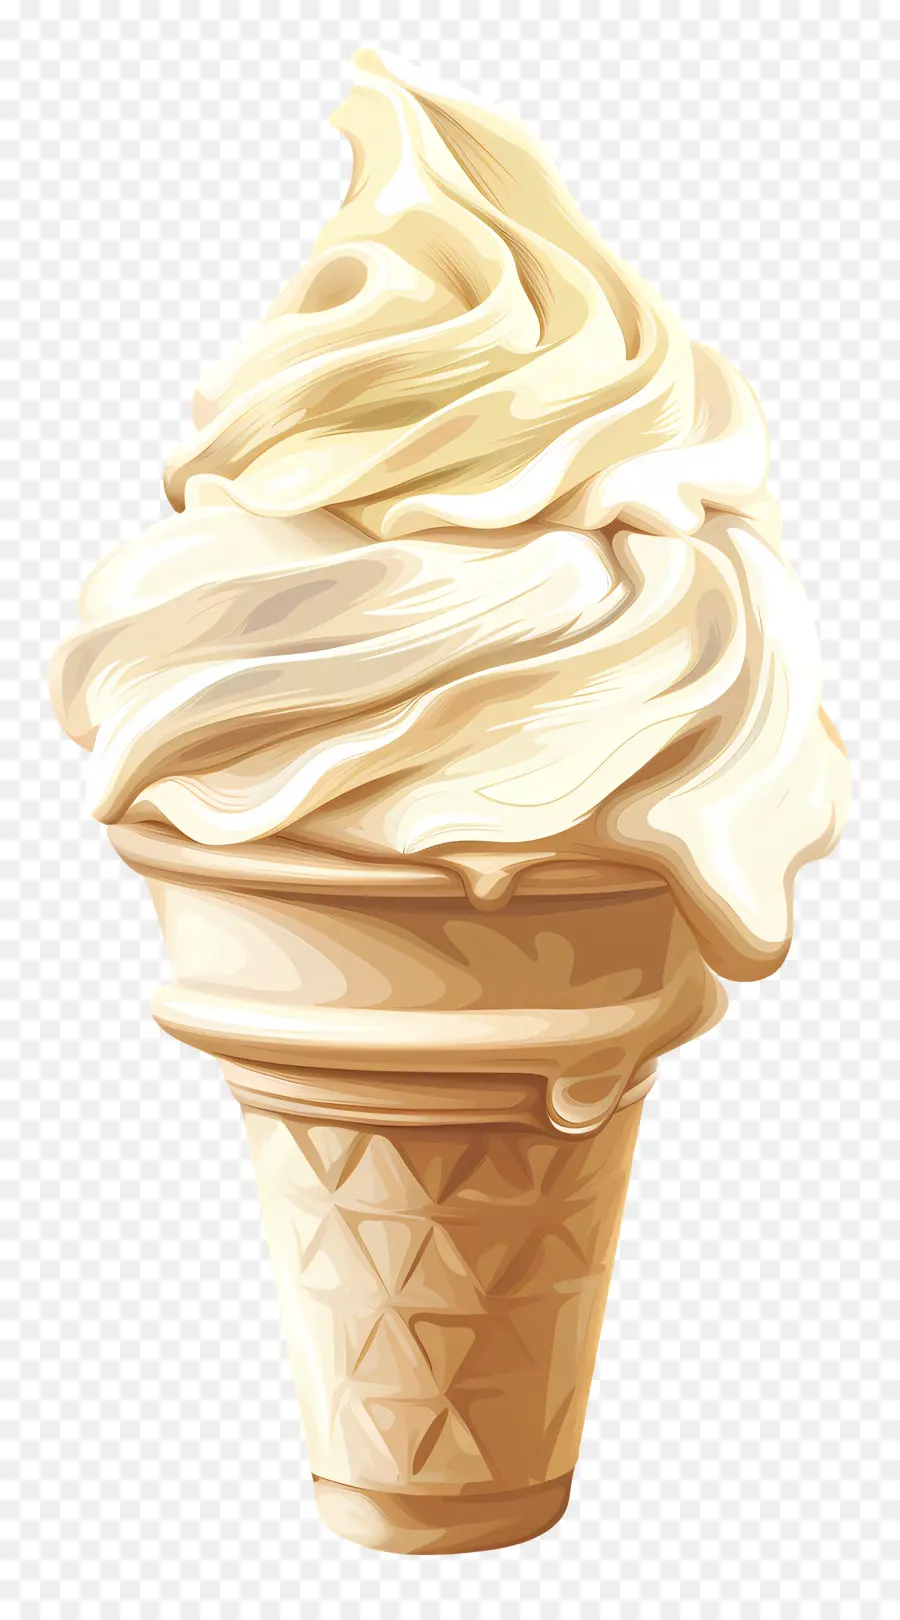 cono gelato gelato alla vaniglia glassa soffice cono a cono turbato - Cono gelato con soffice glassa bianca